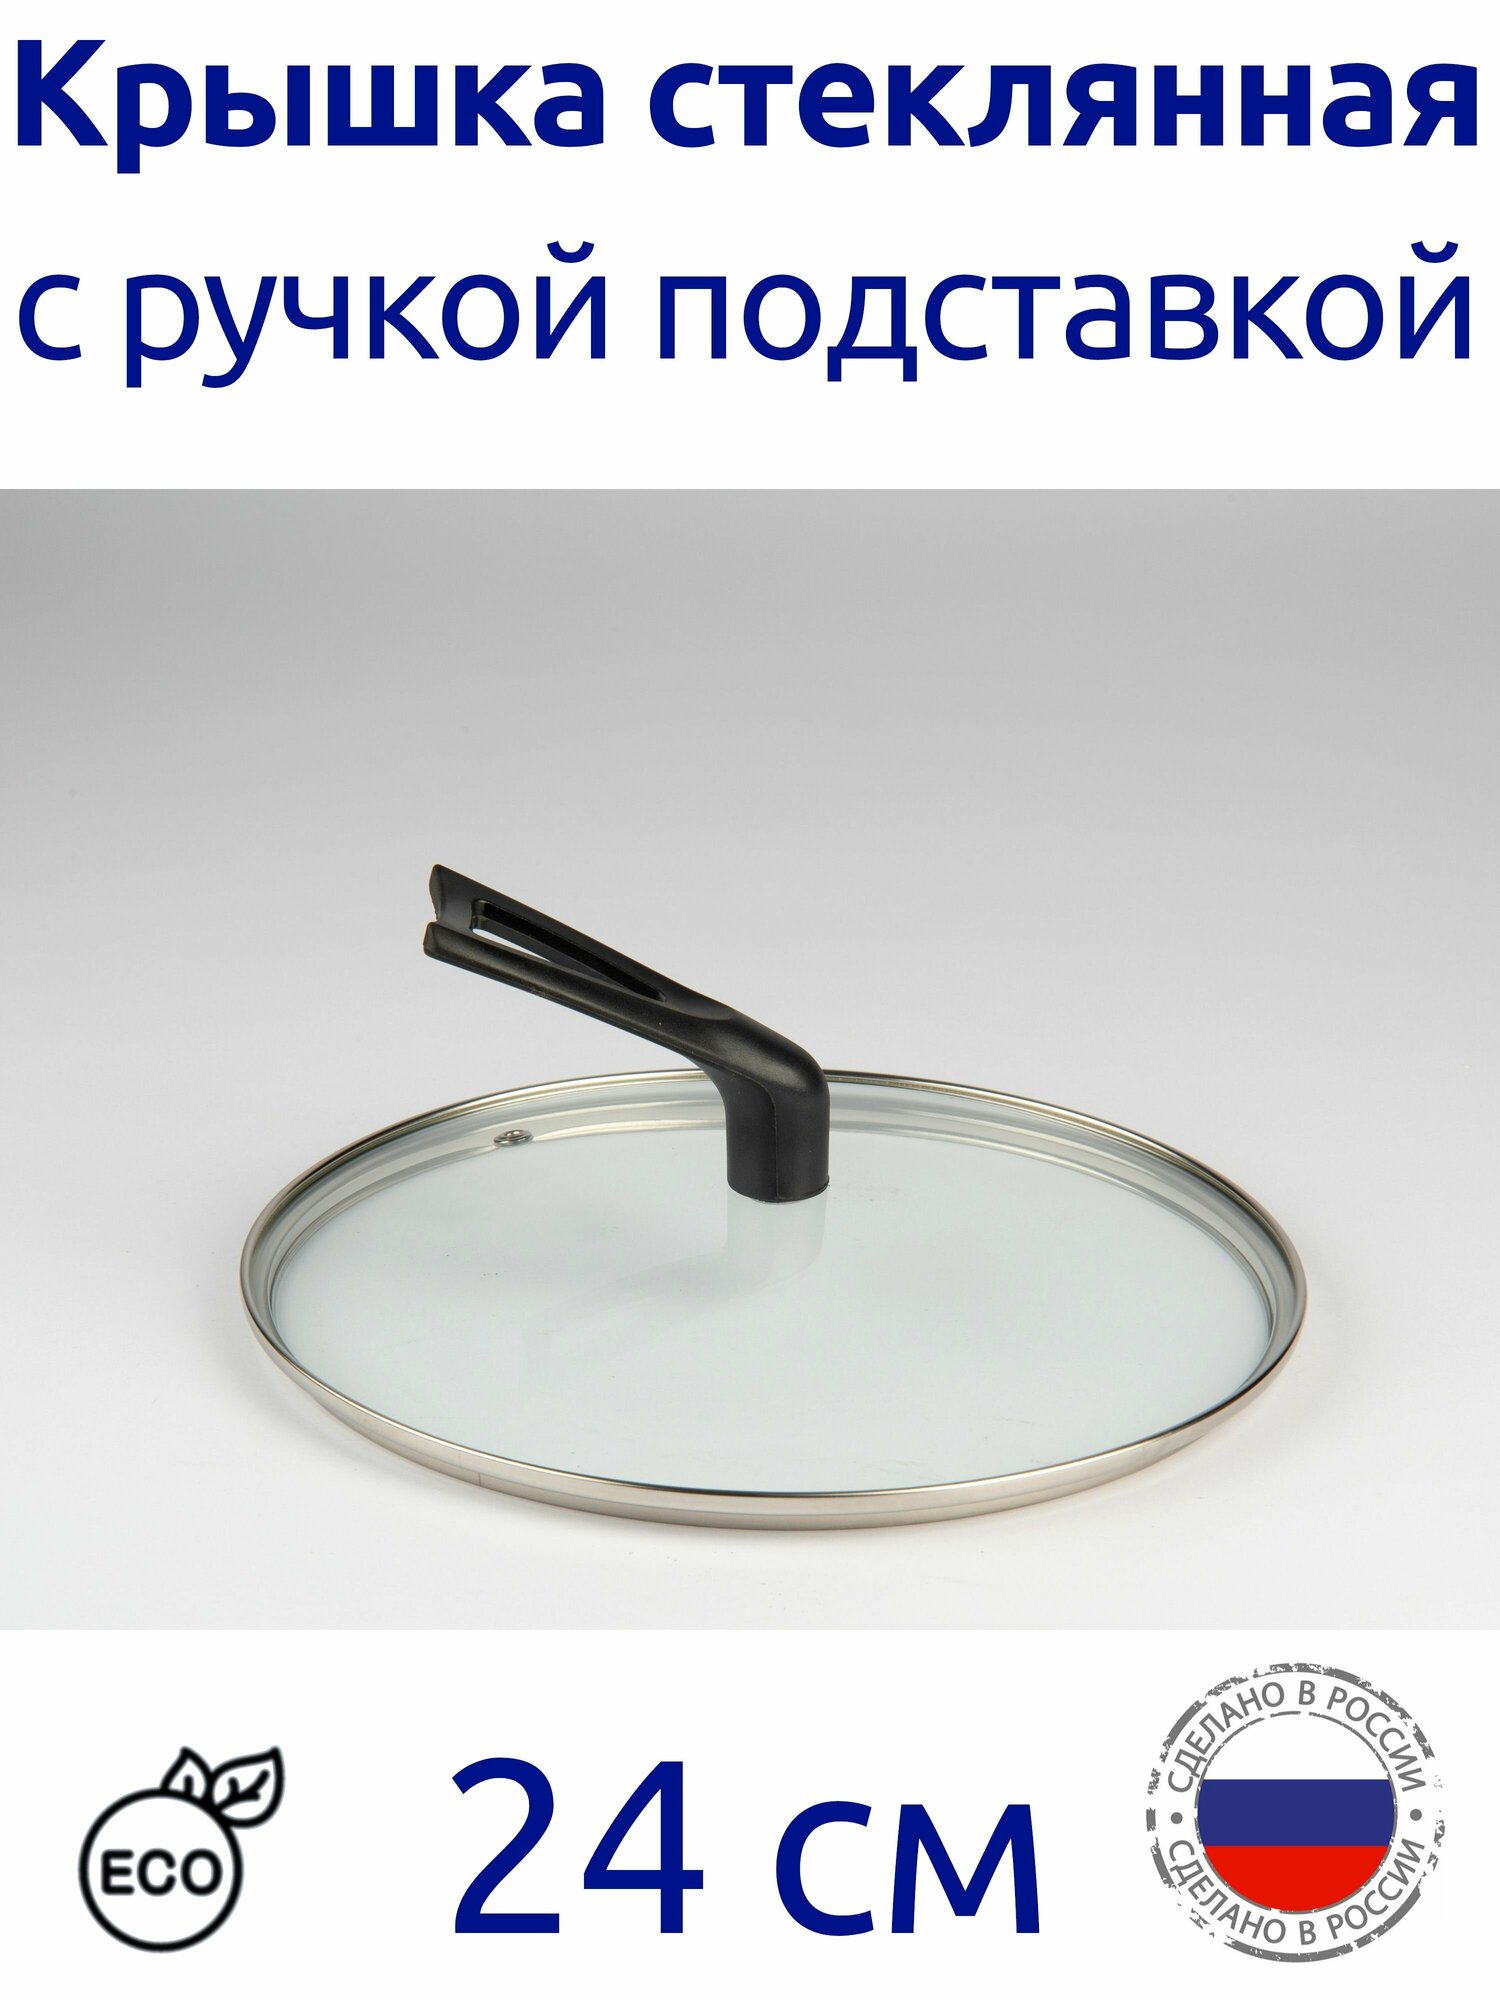 Крышка стеклянная круглая с ручкой подставкой 24 см